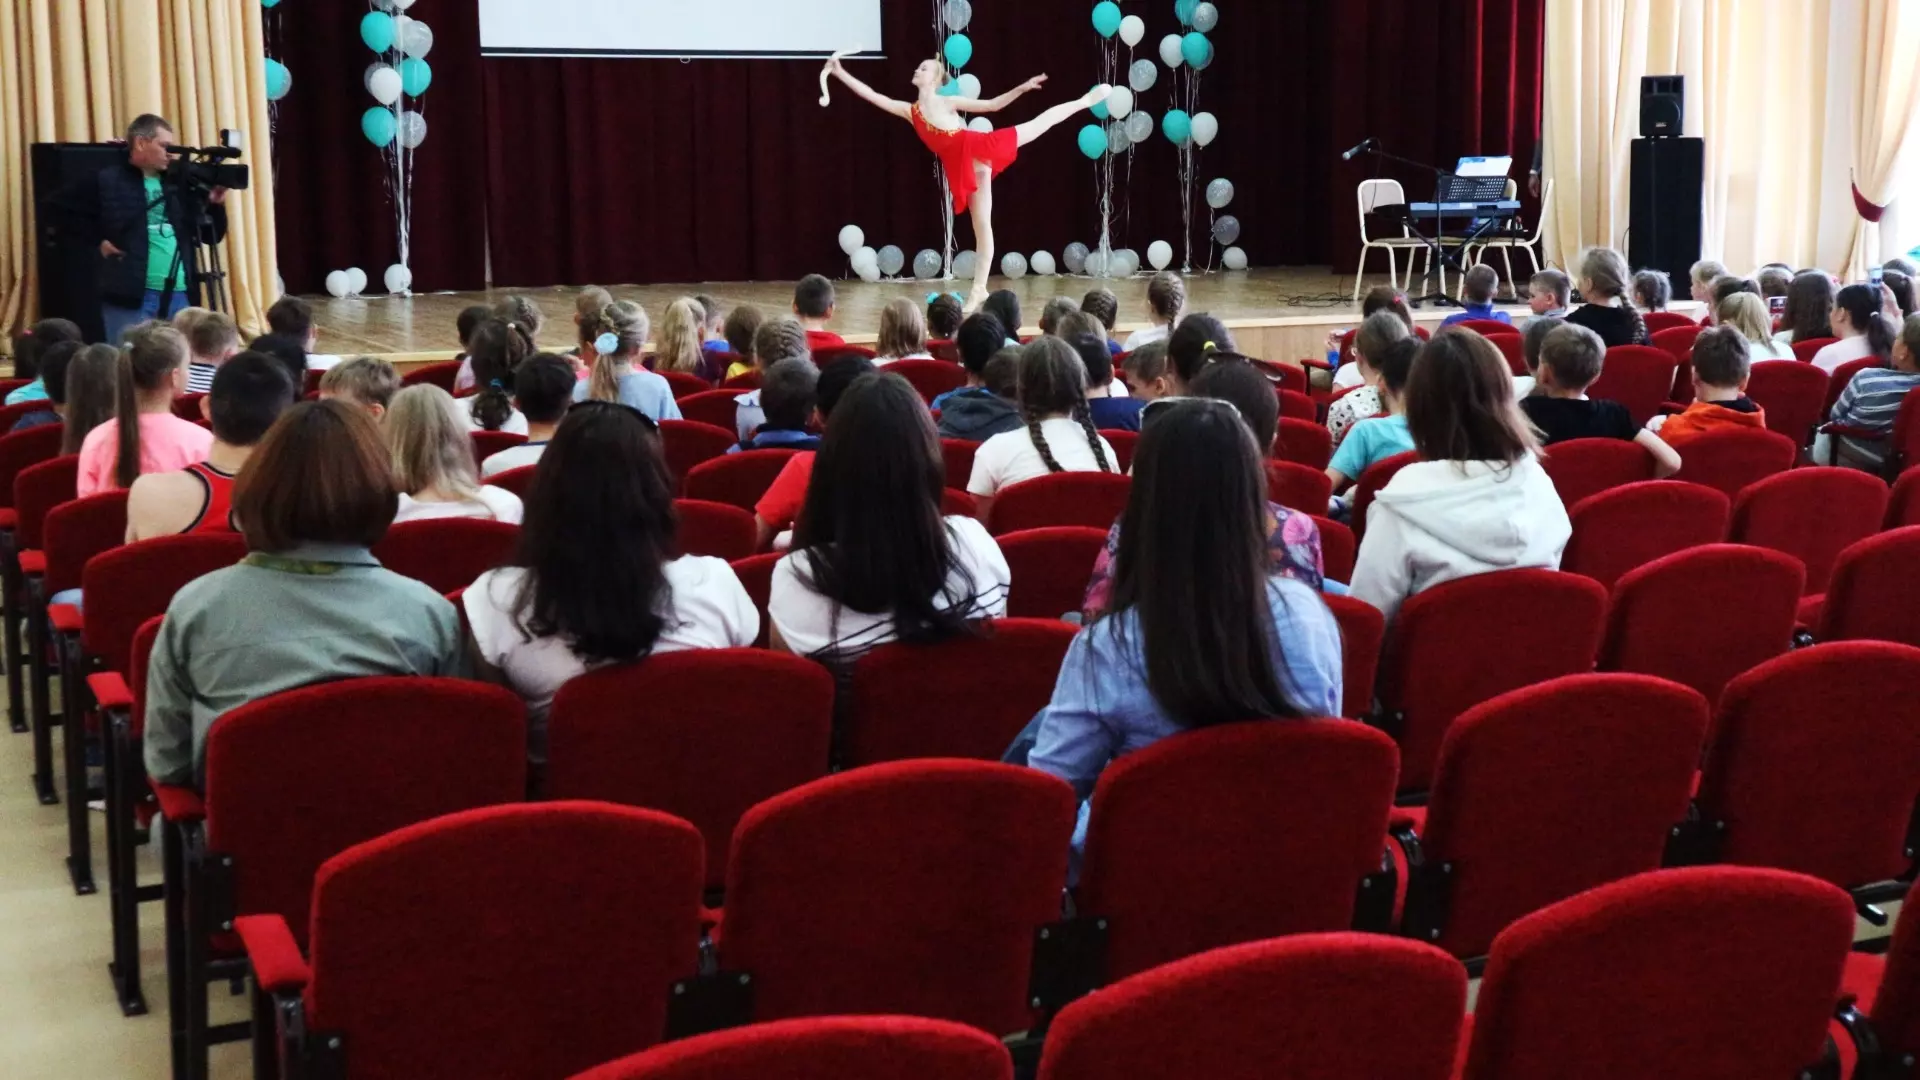 Мэрия Екатеринбурга: учителя станцевали «развратный» танец на конкурс к 8 Марта